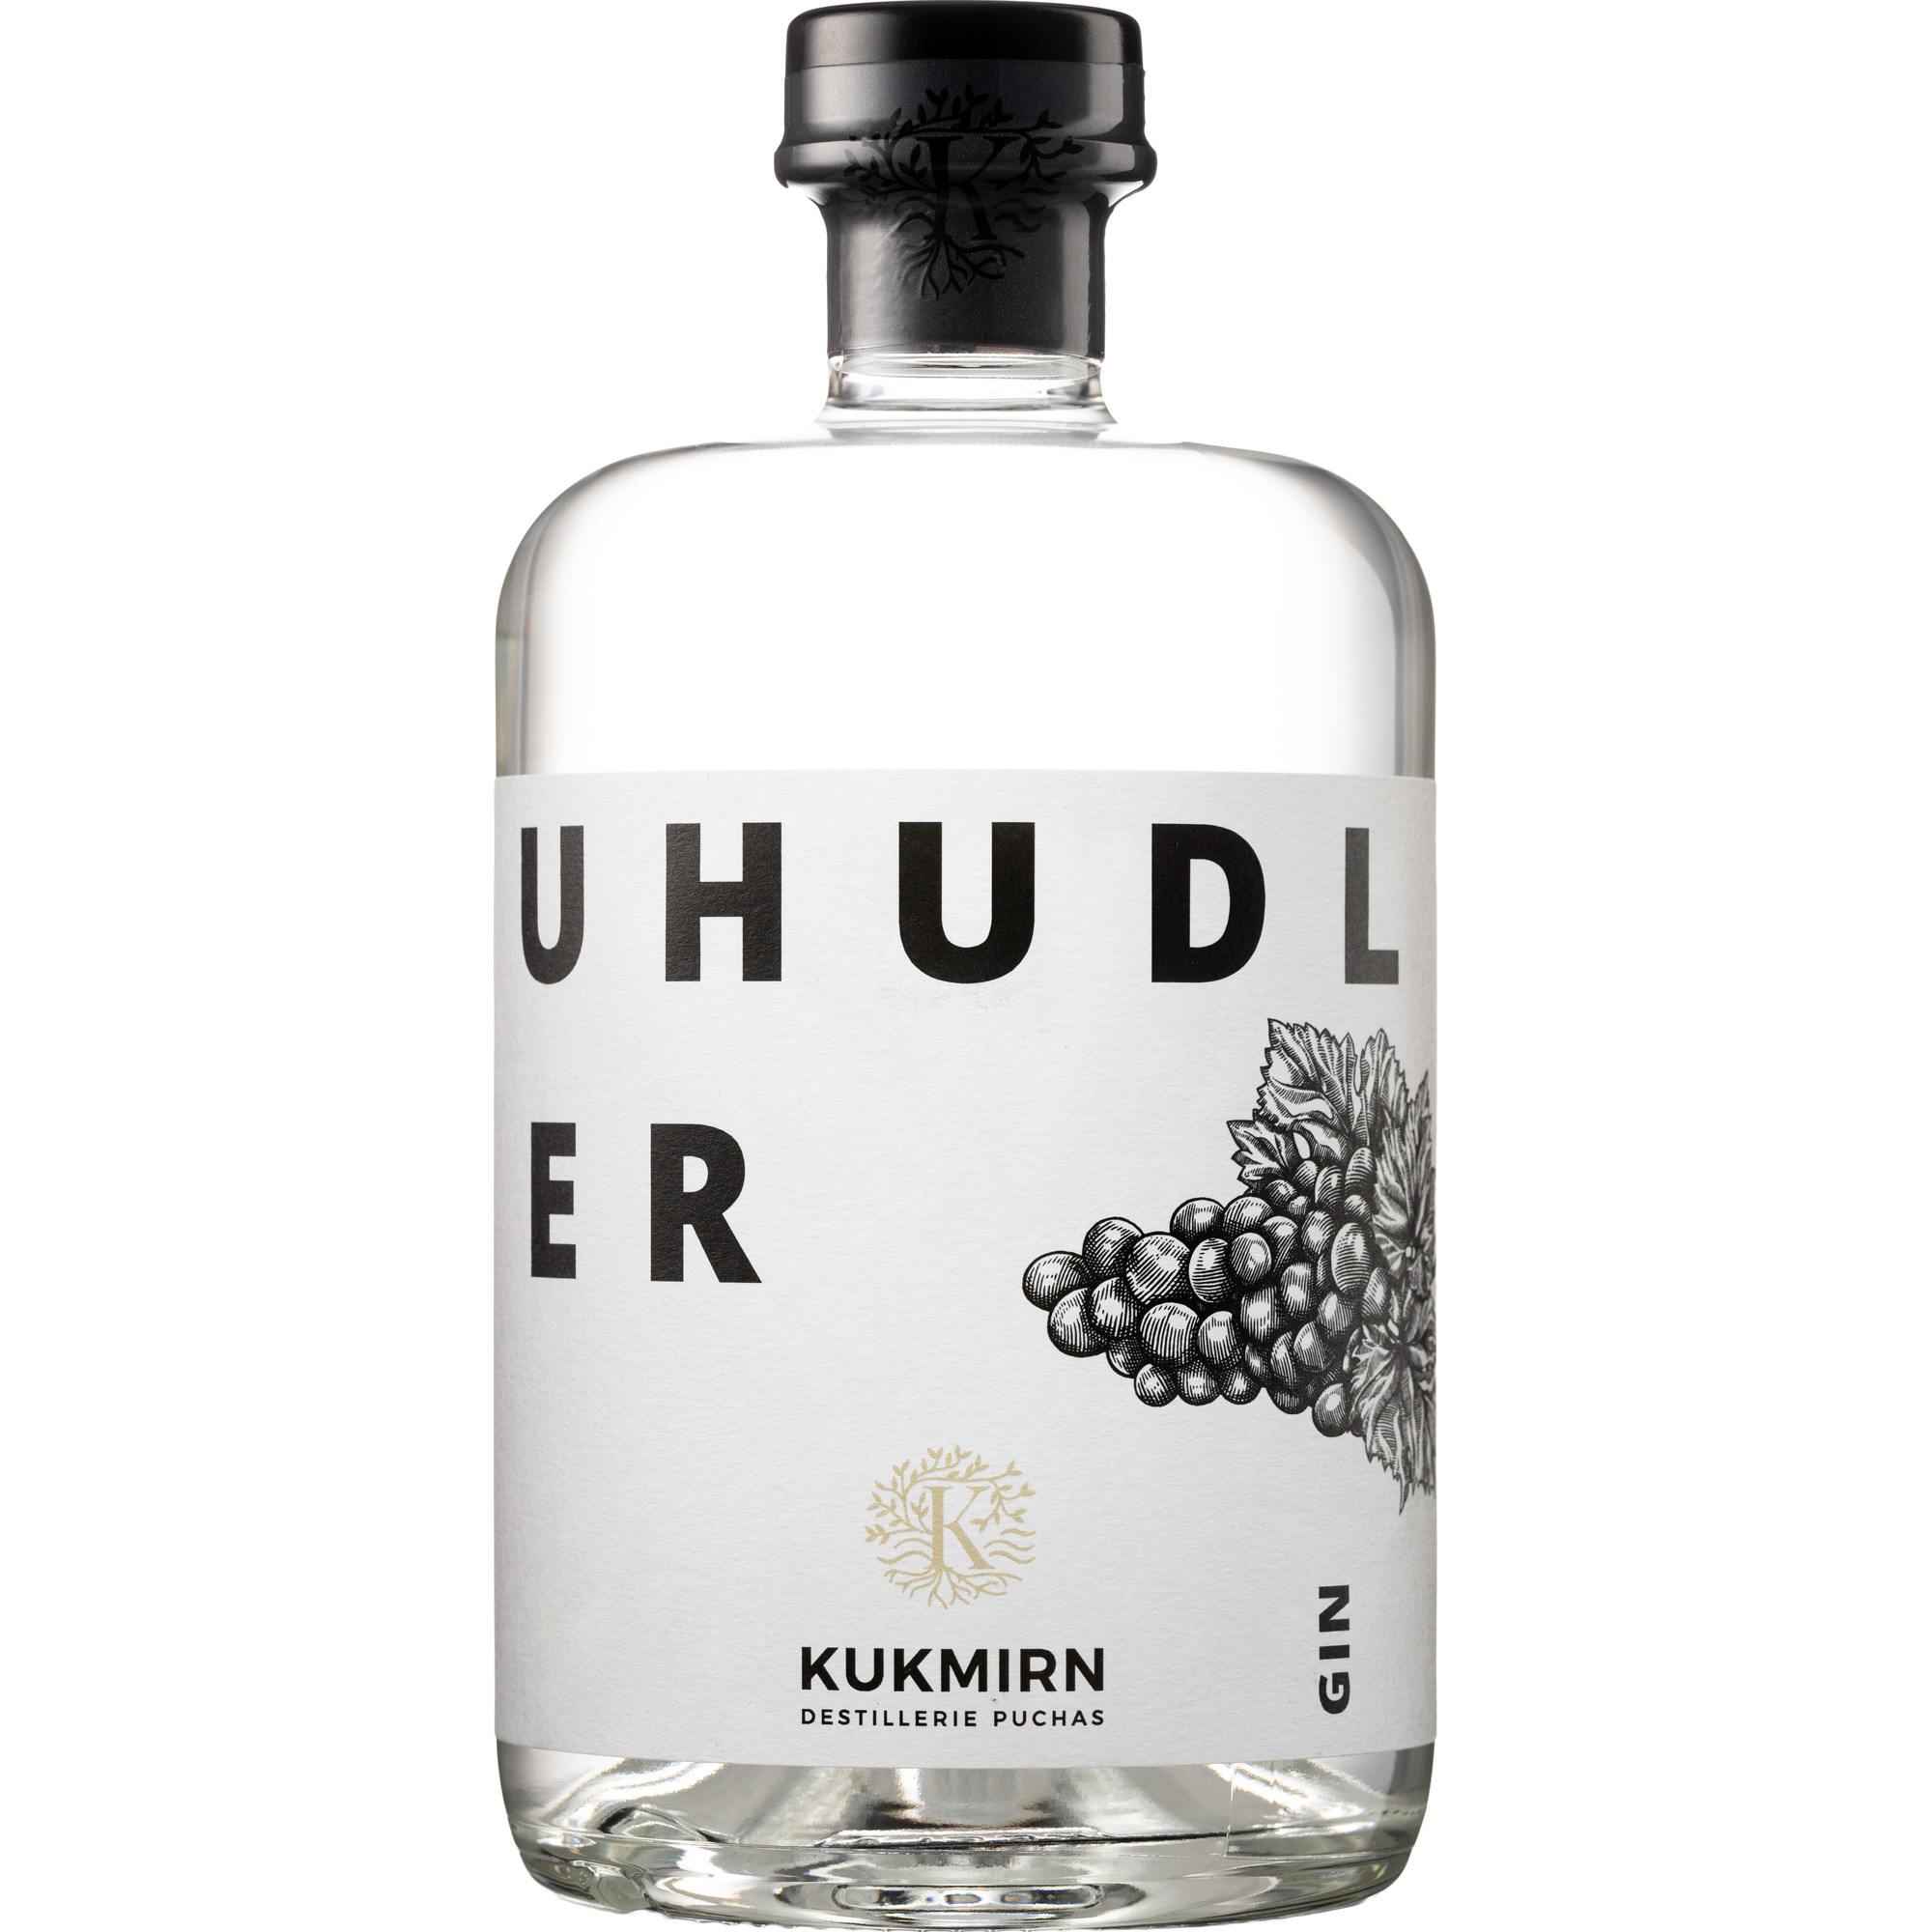 Kukmirn Uhudler Gin 0,5l